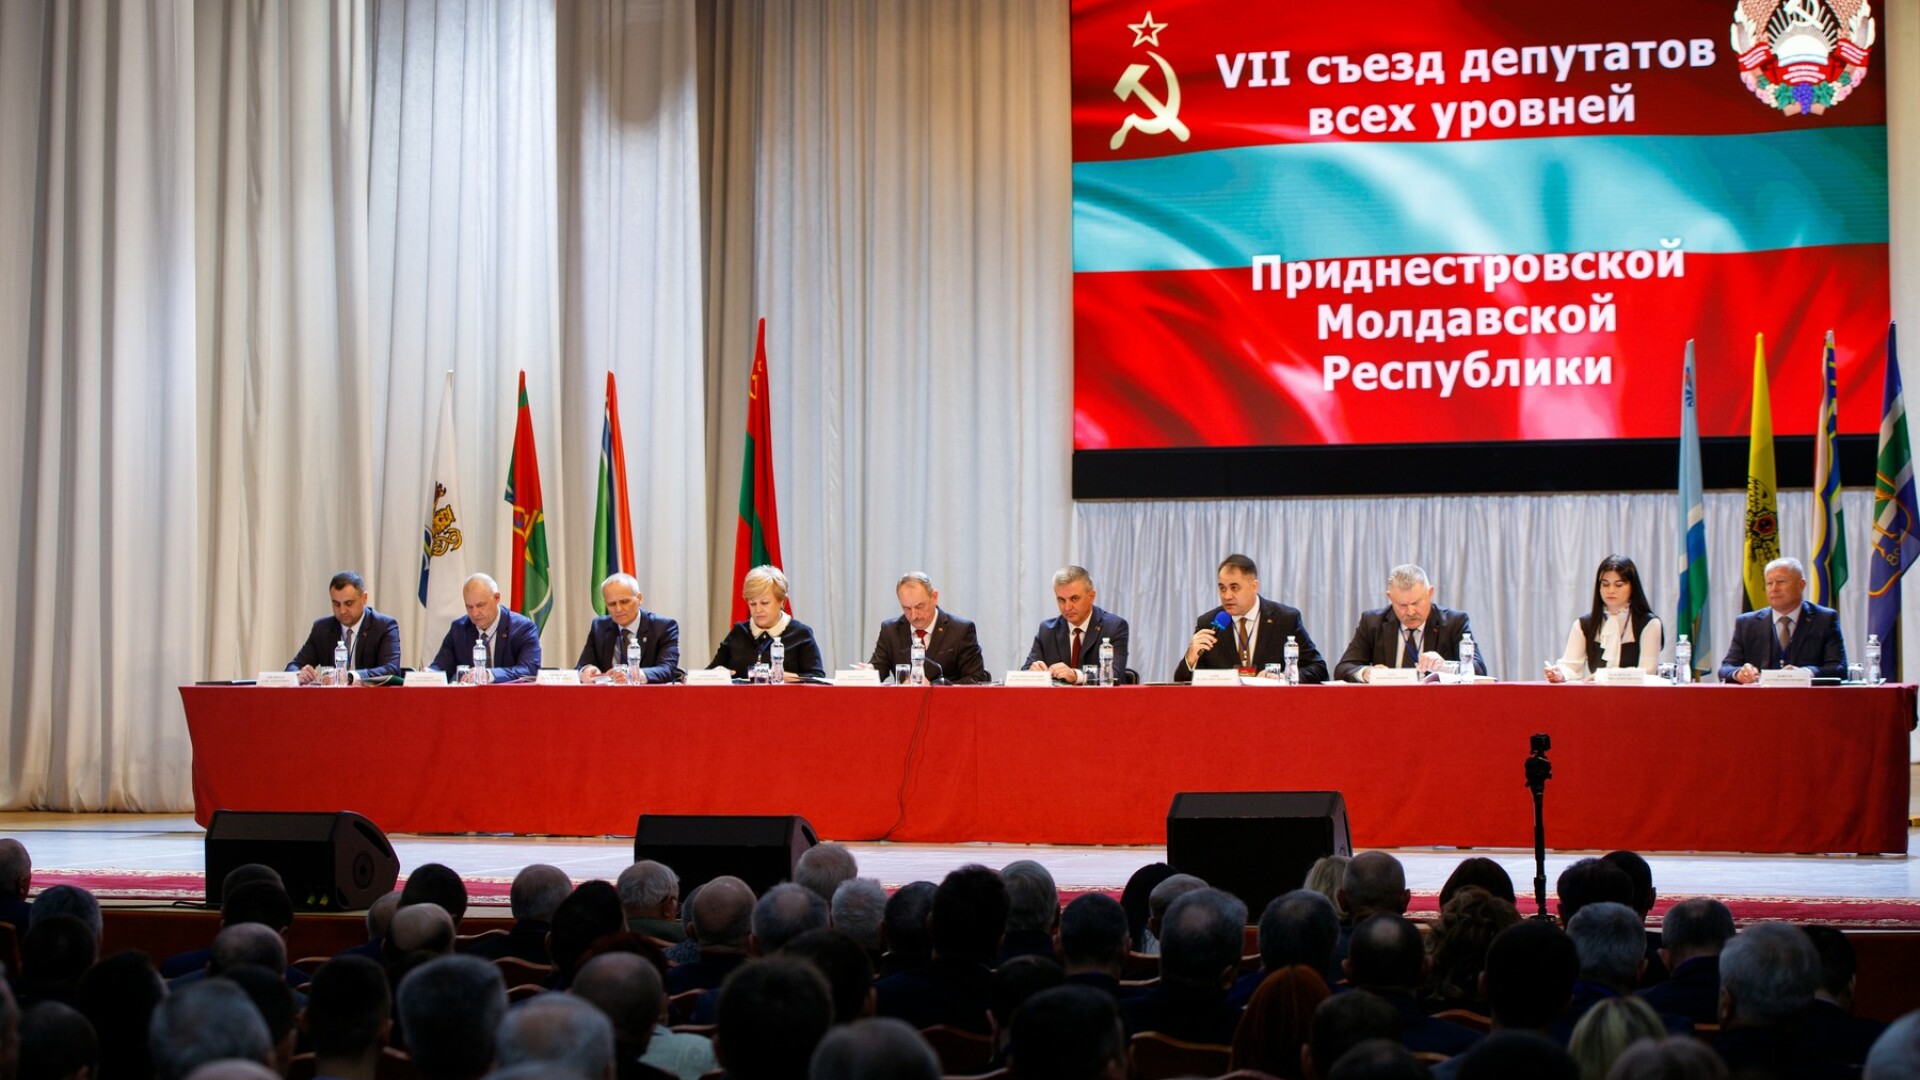 transnistria, congres tiraspol